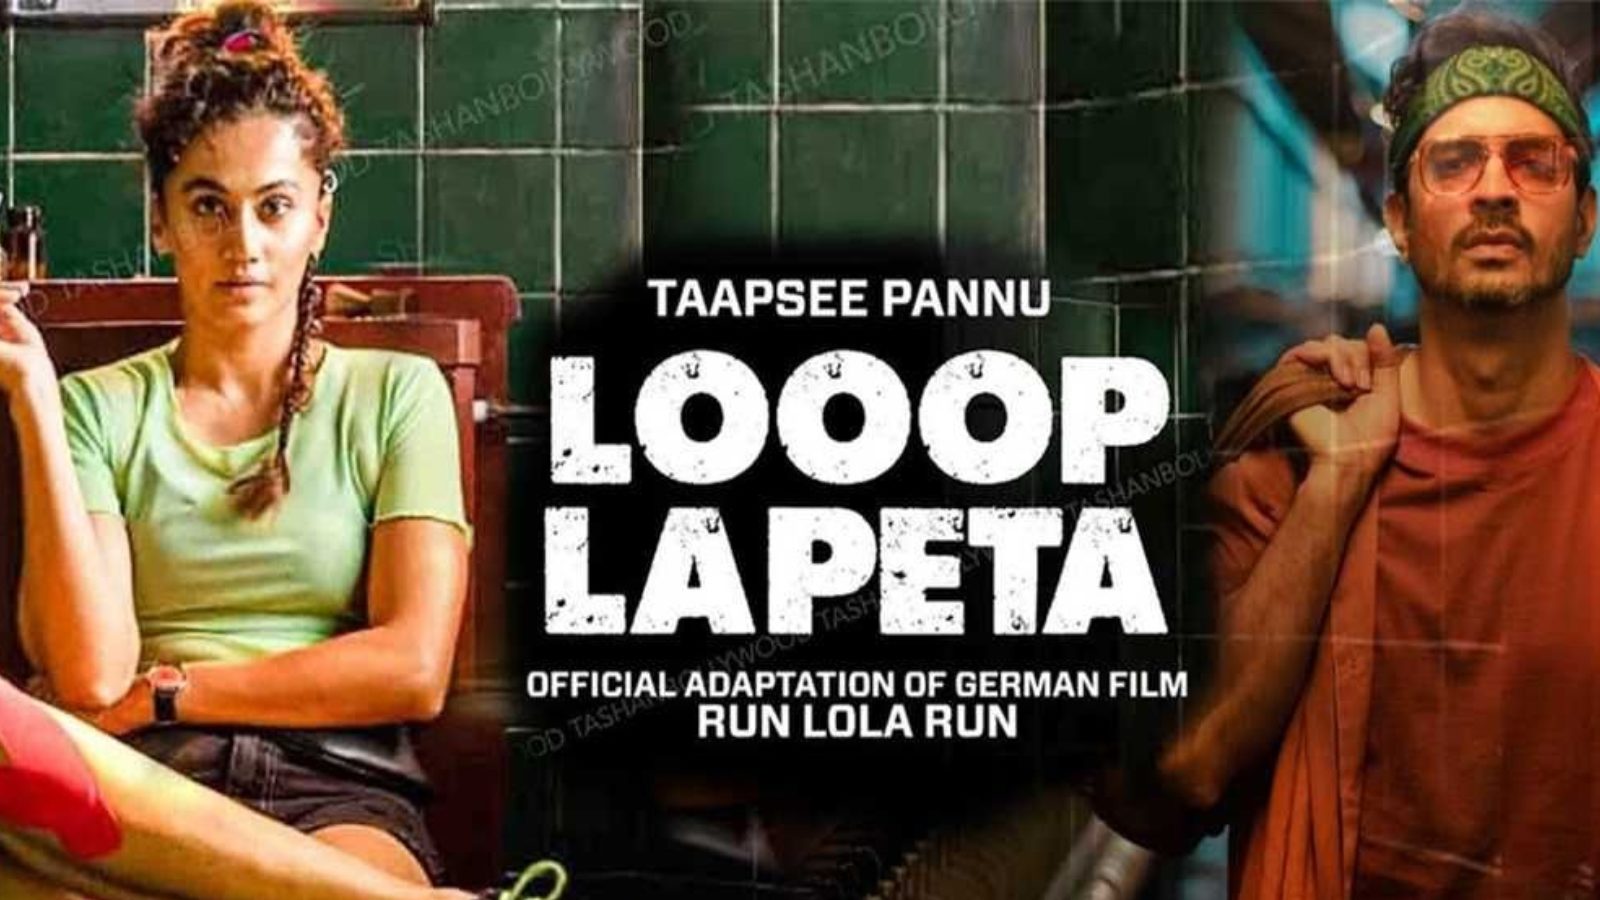 Read Film Review of Looop Lapeta in hindi EntPKS – ‘Looop Lapeta’ Film Review: अच्छे रीमेक में ओरिजिनालिटी रखी जाए तो मजा आ जाता है – News18 हिंदी